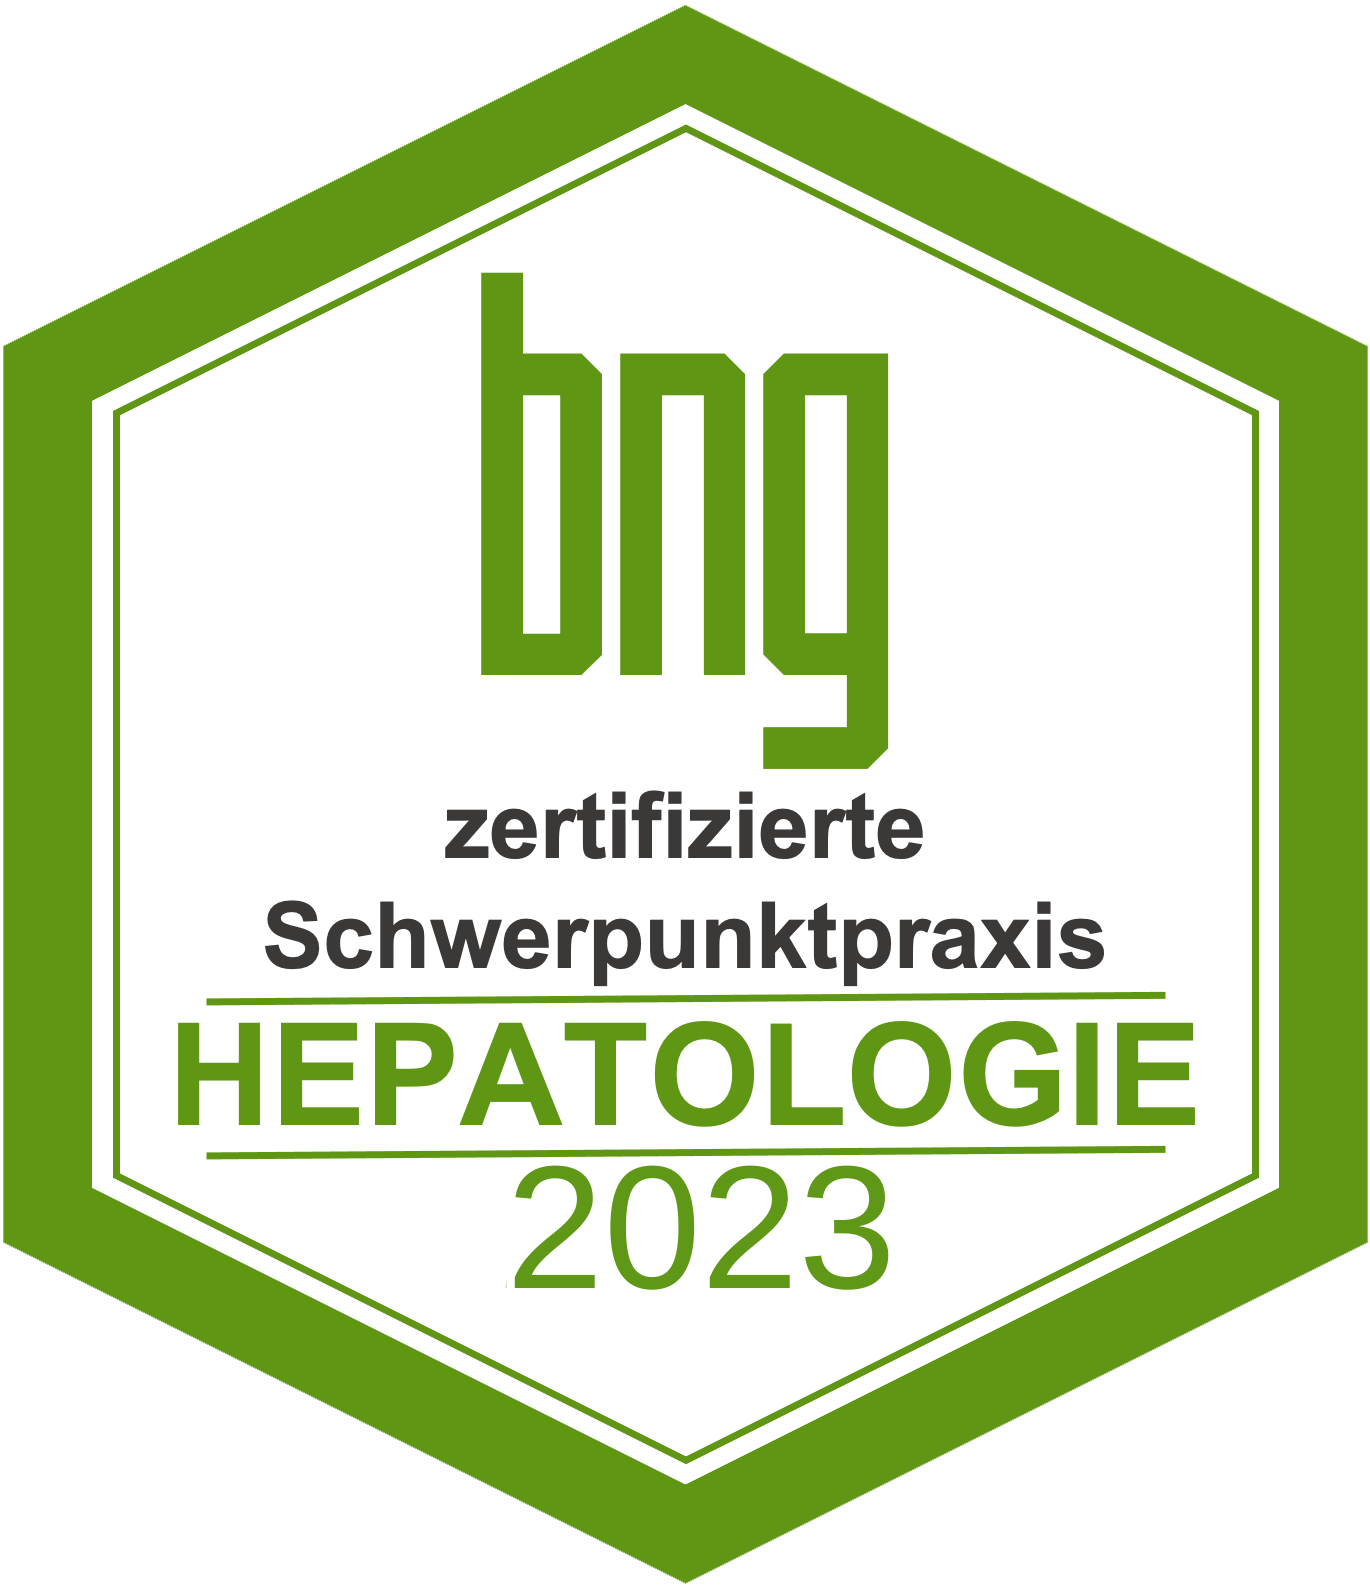 2023 Siegel SPS Hepatologie HG weiß